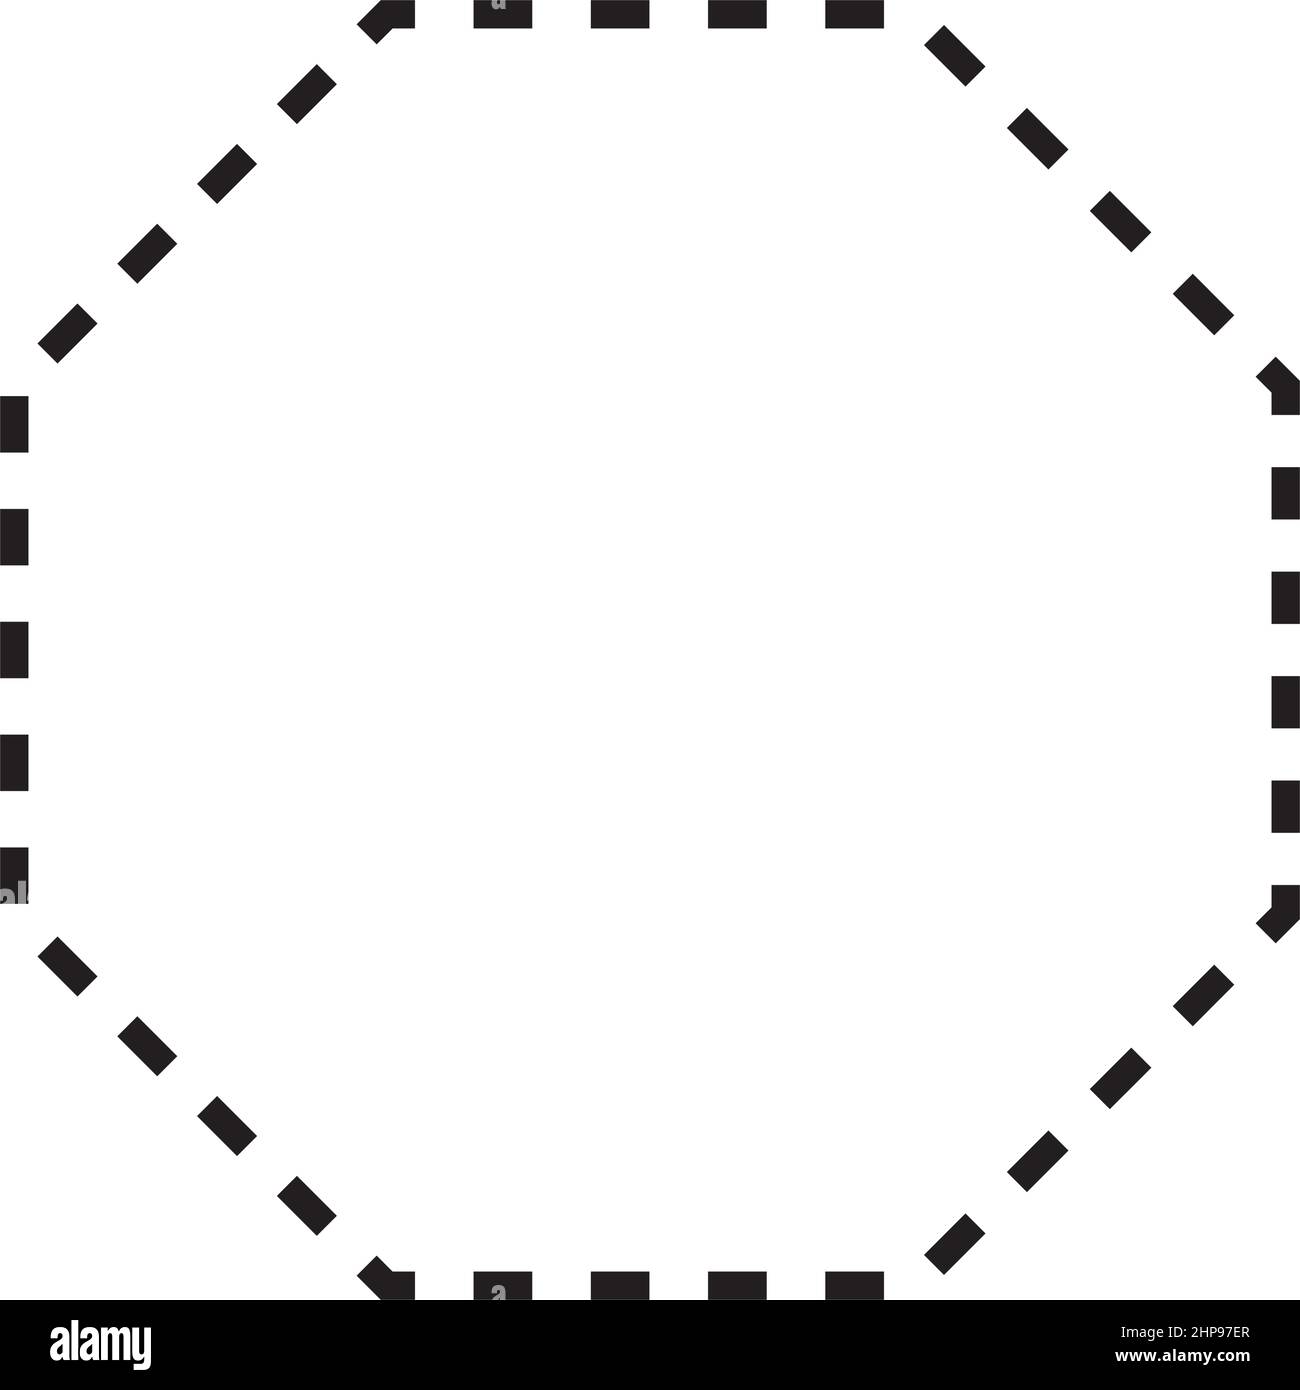 Octagon Symbol gestrichelte Form Vektor-Symbol für kreative Grafik-Design-ui-Element in einem Piktogramm Illustration Stock Vektor